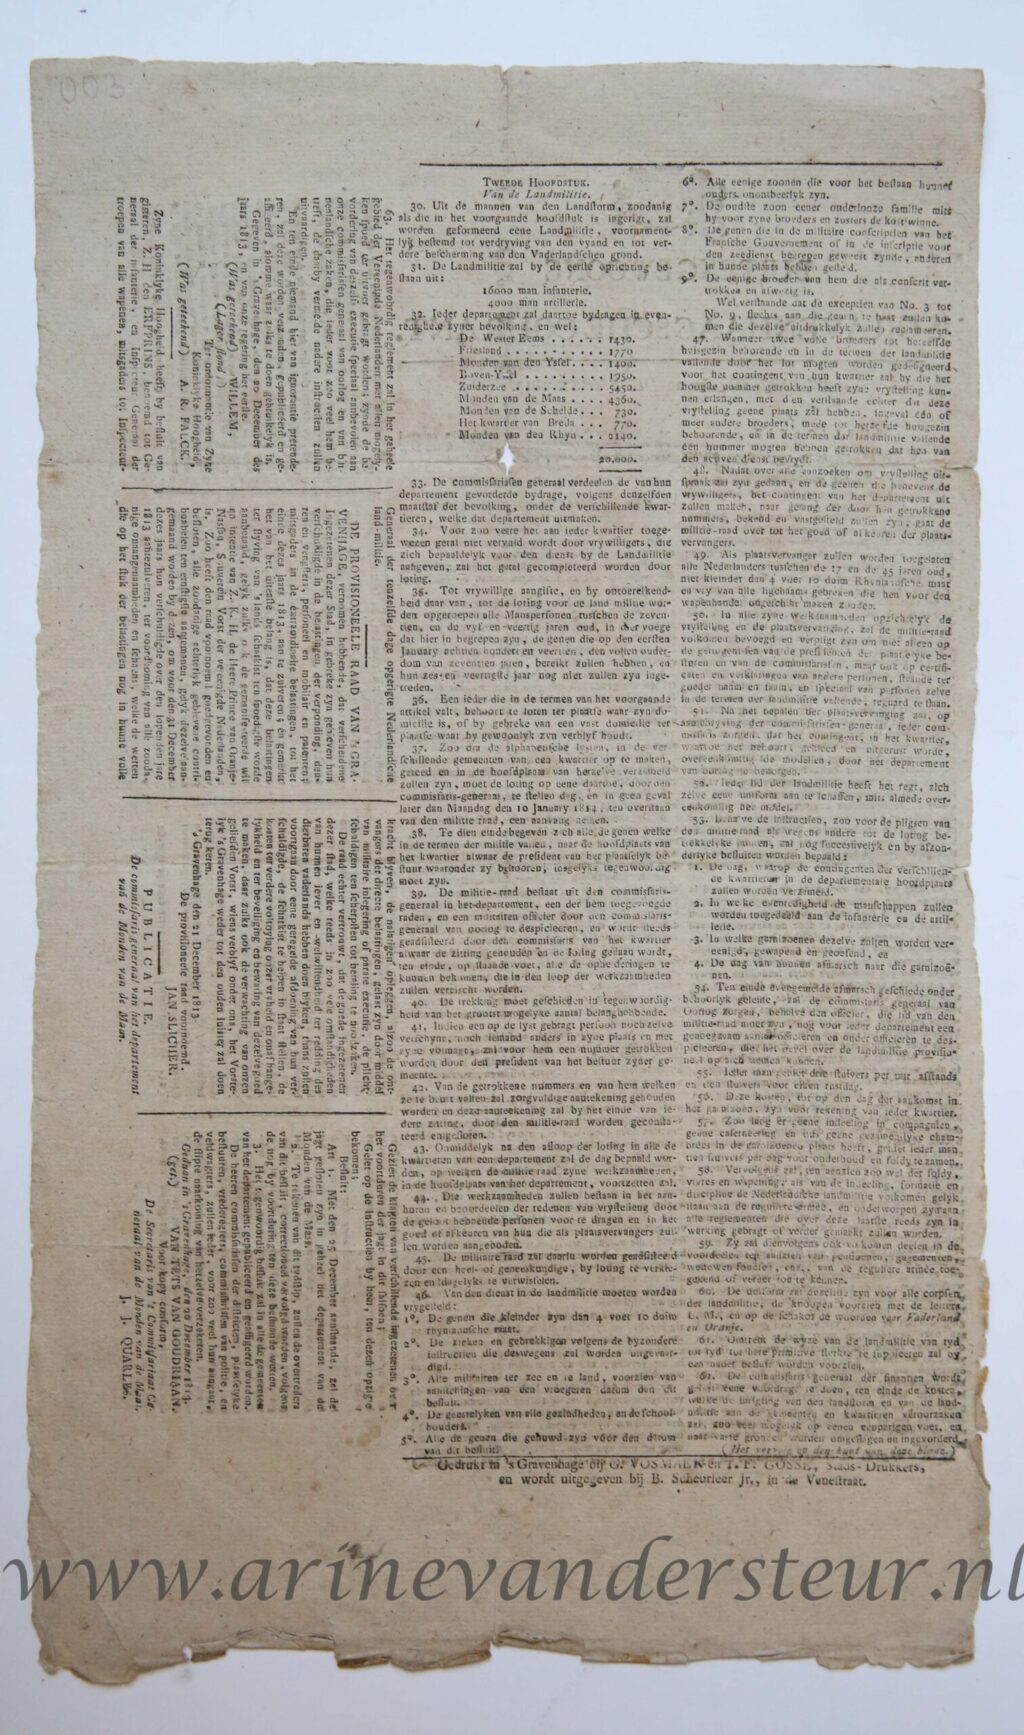 [Newspaper/Krant 1813] Buitengewoone ’S Gravenhaagsche Courant Zaterdag, den woensdag 22 December 1813, 1p.